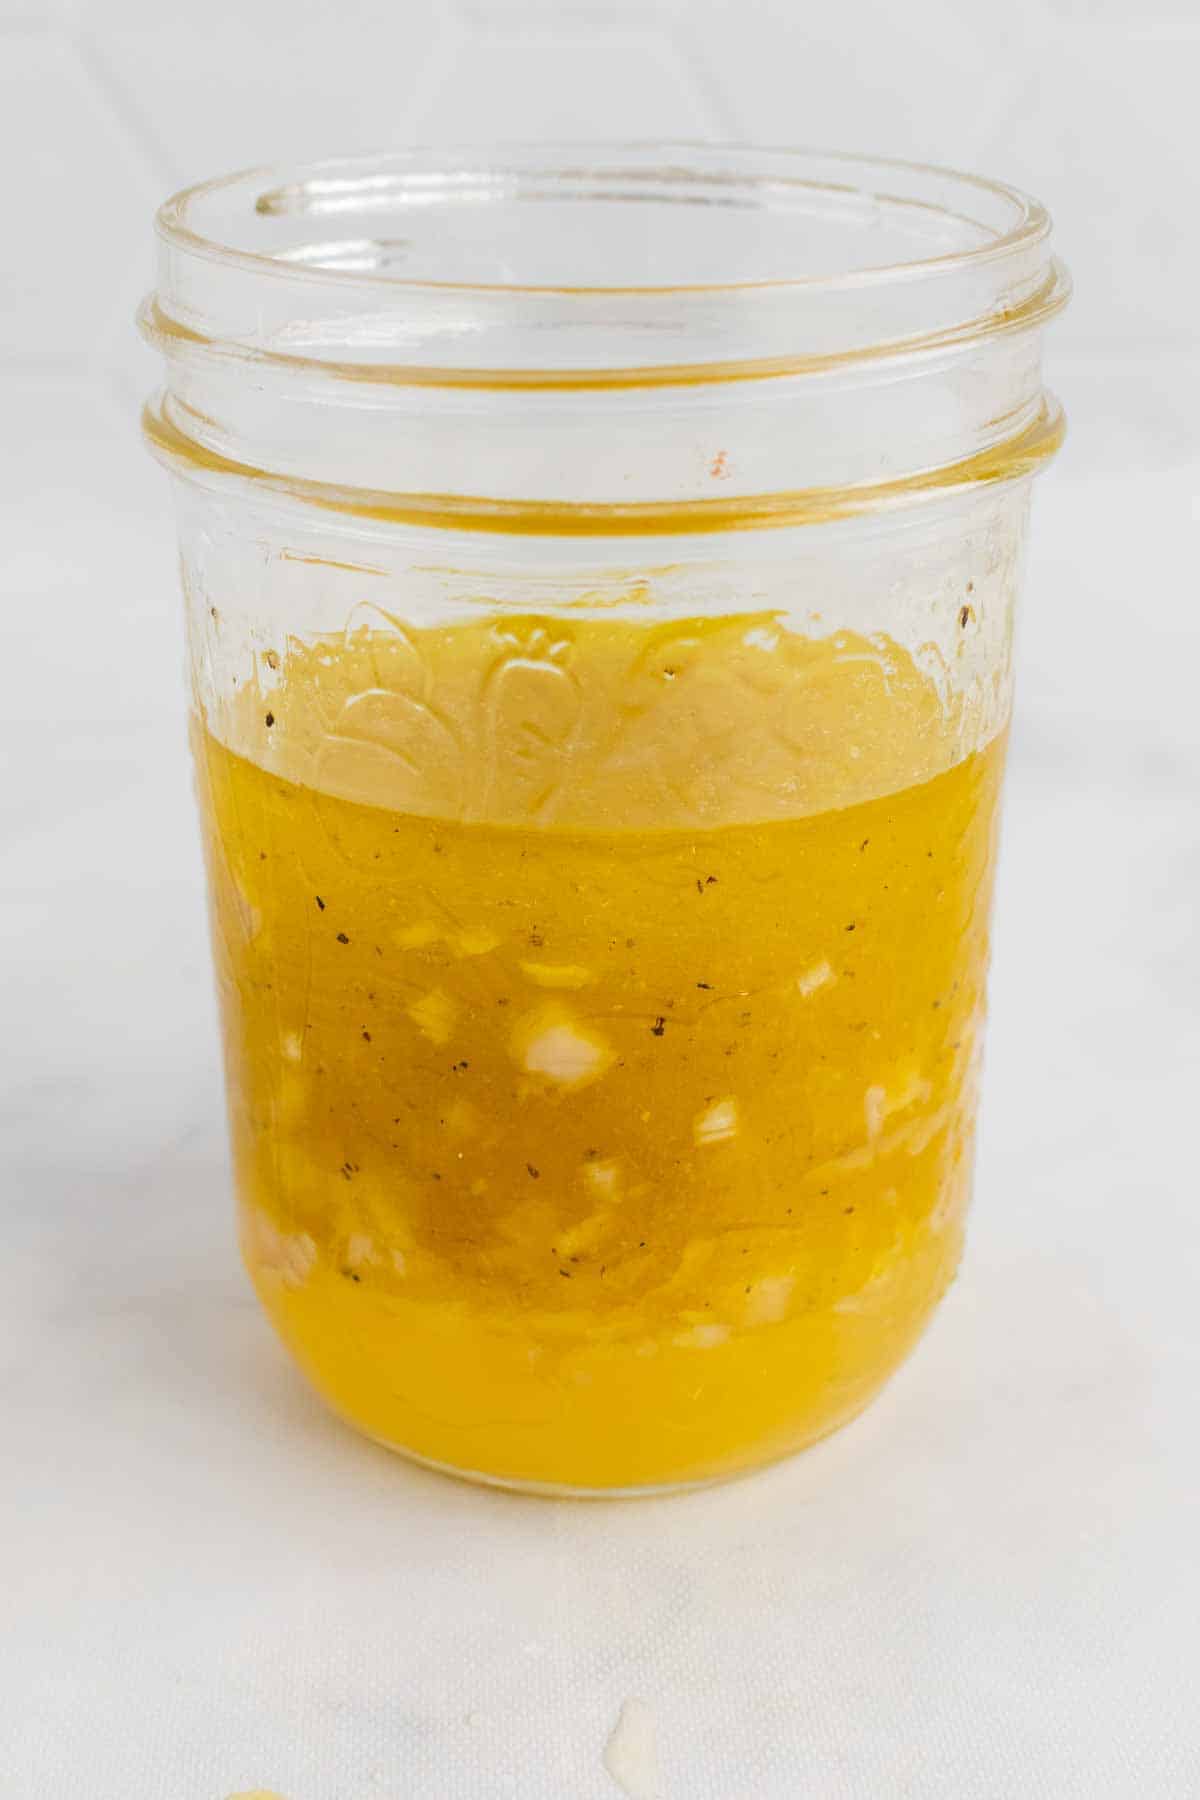 Glass jar with citrus vinaigrette